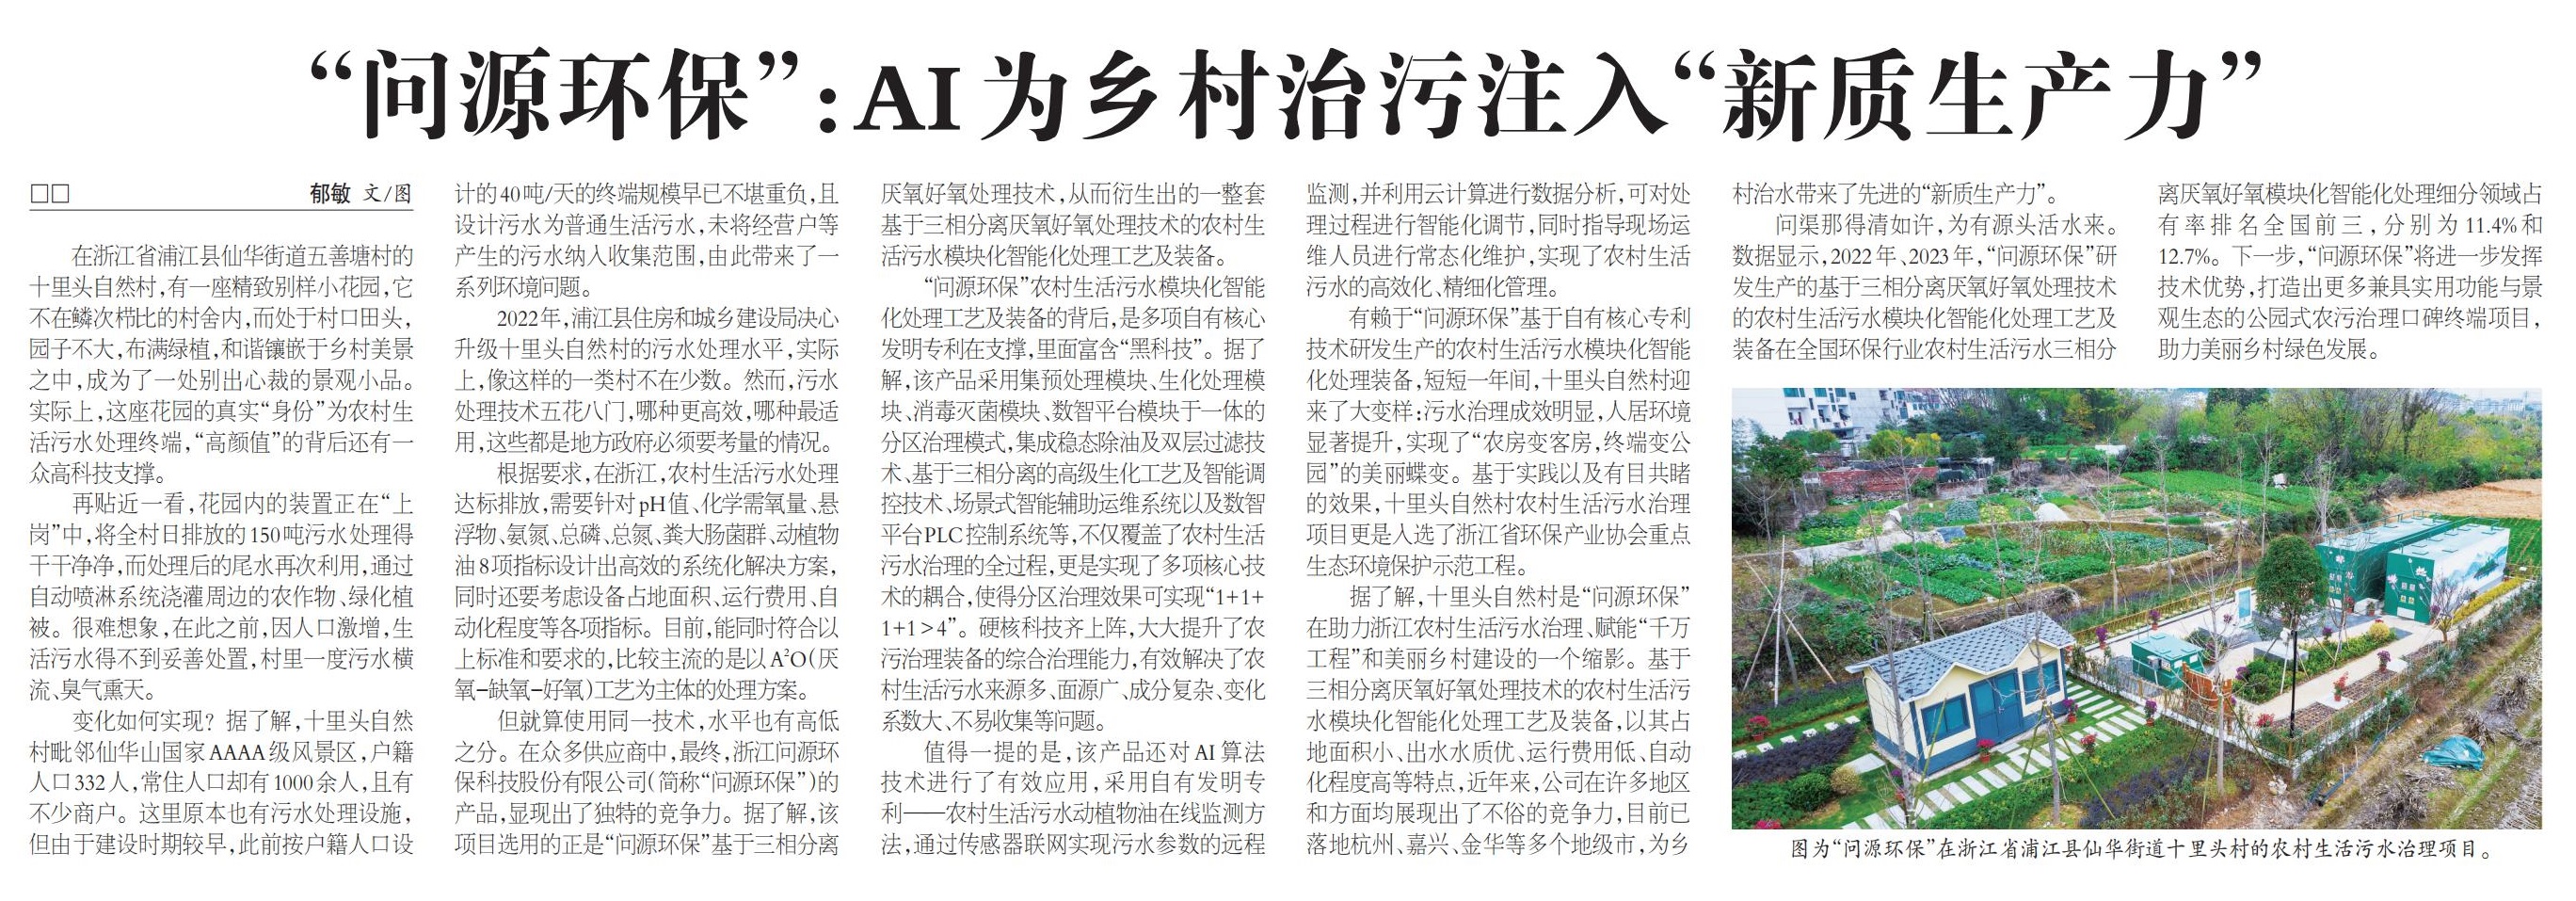  农民日报丨“3354cc金沙集团”：AI为乡村治污注入“新质生产力”